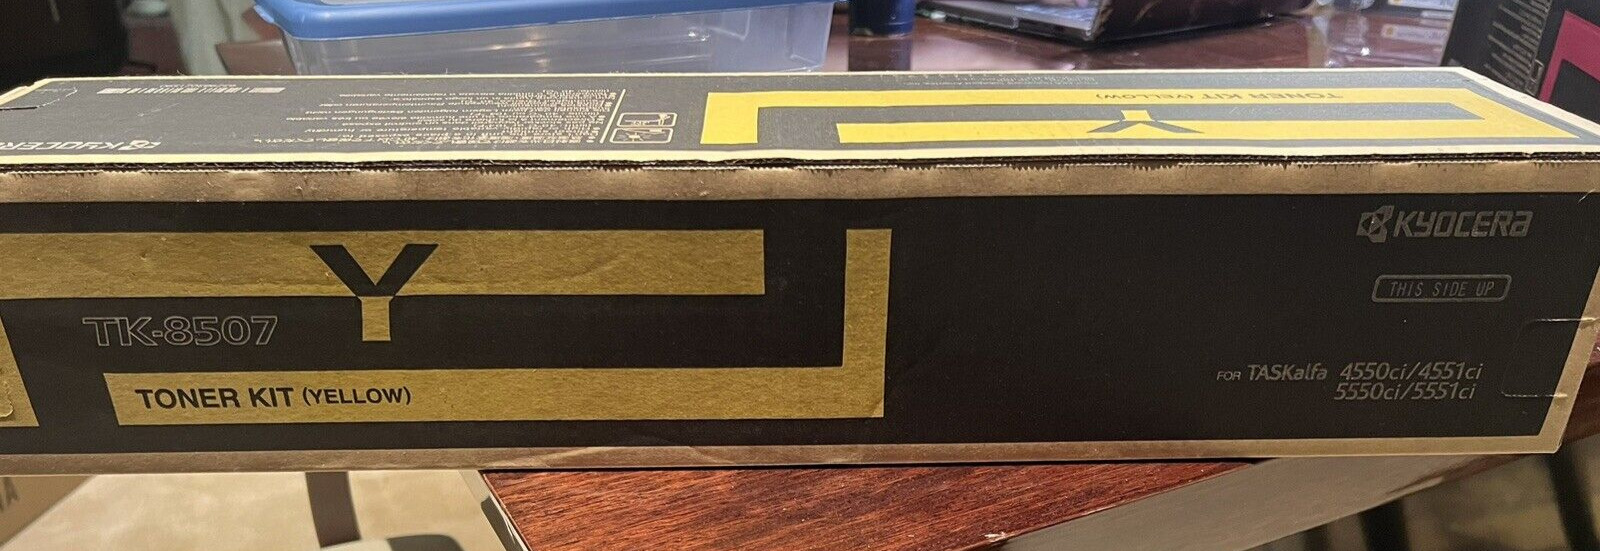 New (in the box) Kyocera TK-8507 Toner Kit (yellow)